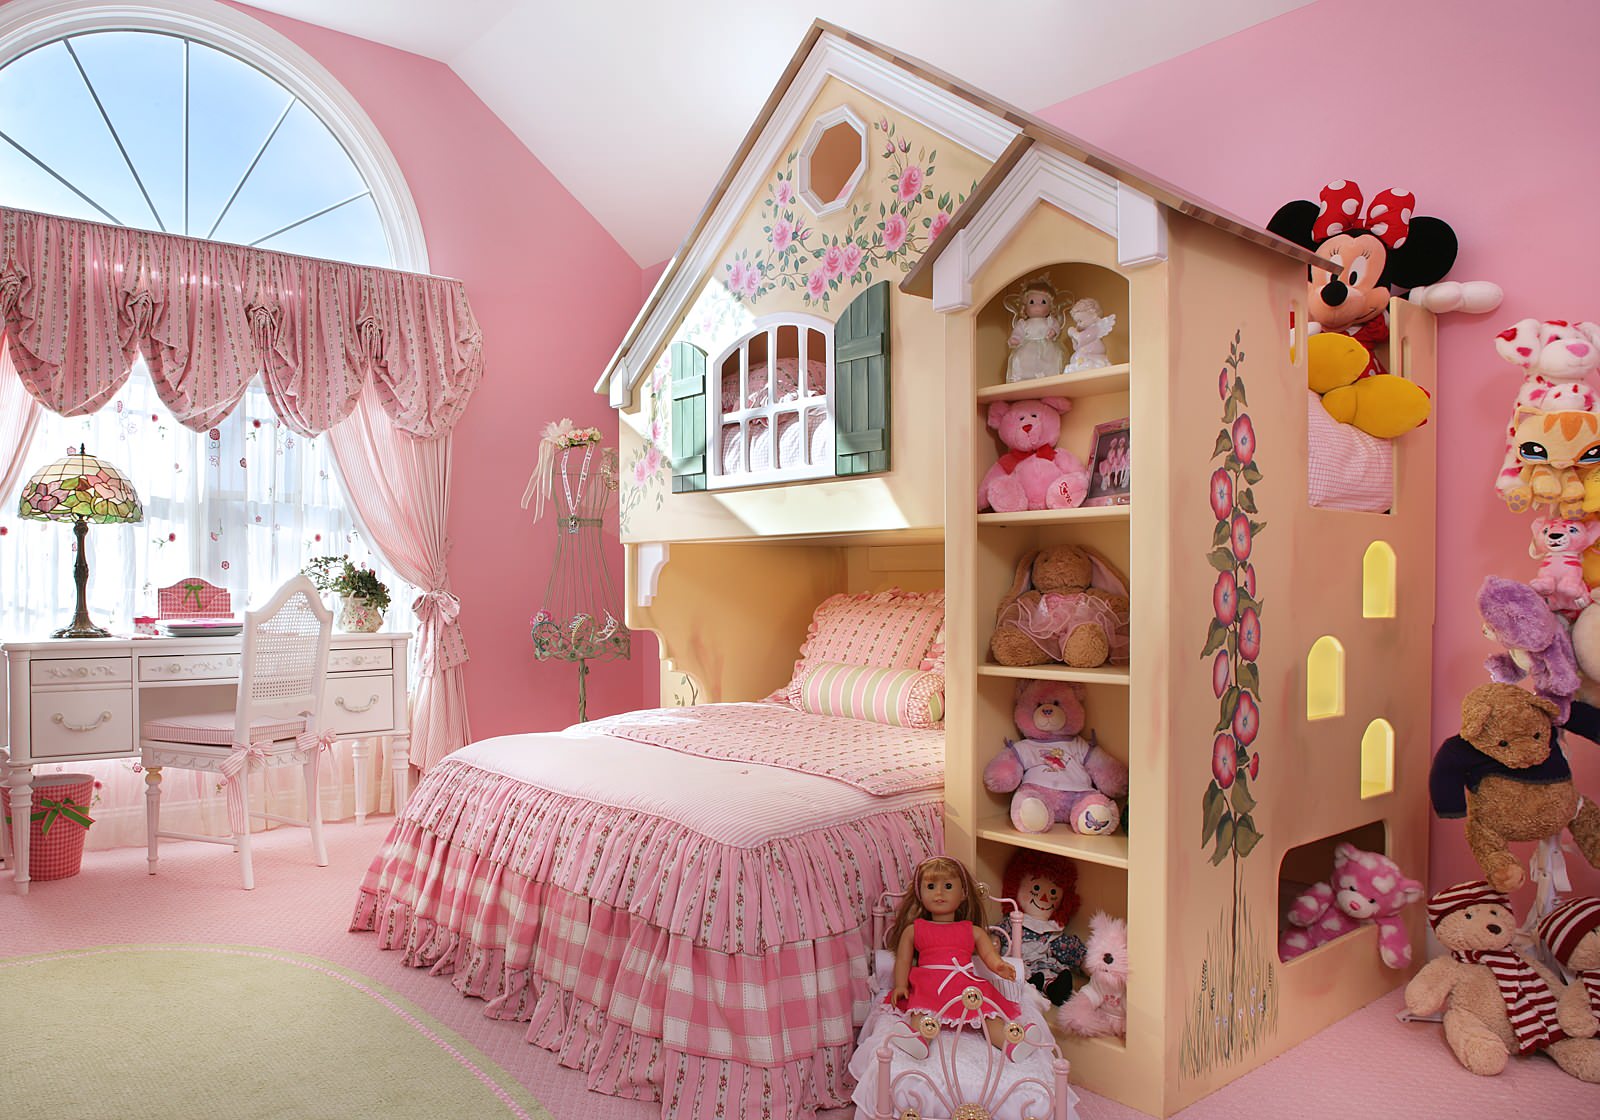 3 комнатка. Комната для девочки. Детские комнаты для девочек. Дизайн детской для девочки. Детские комнаты дляддевочек.